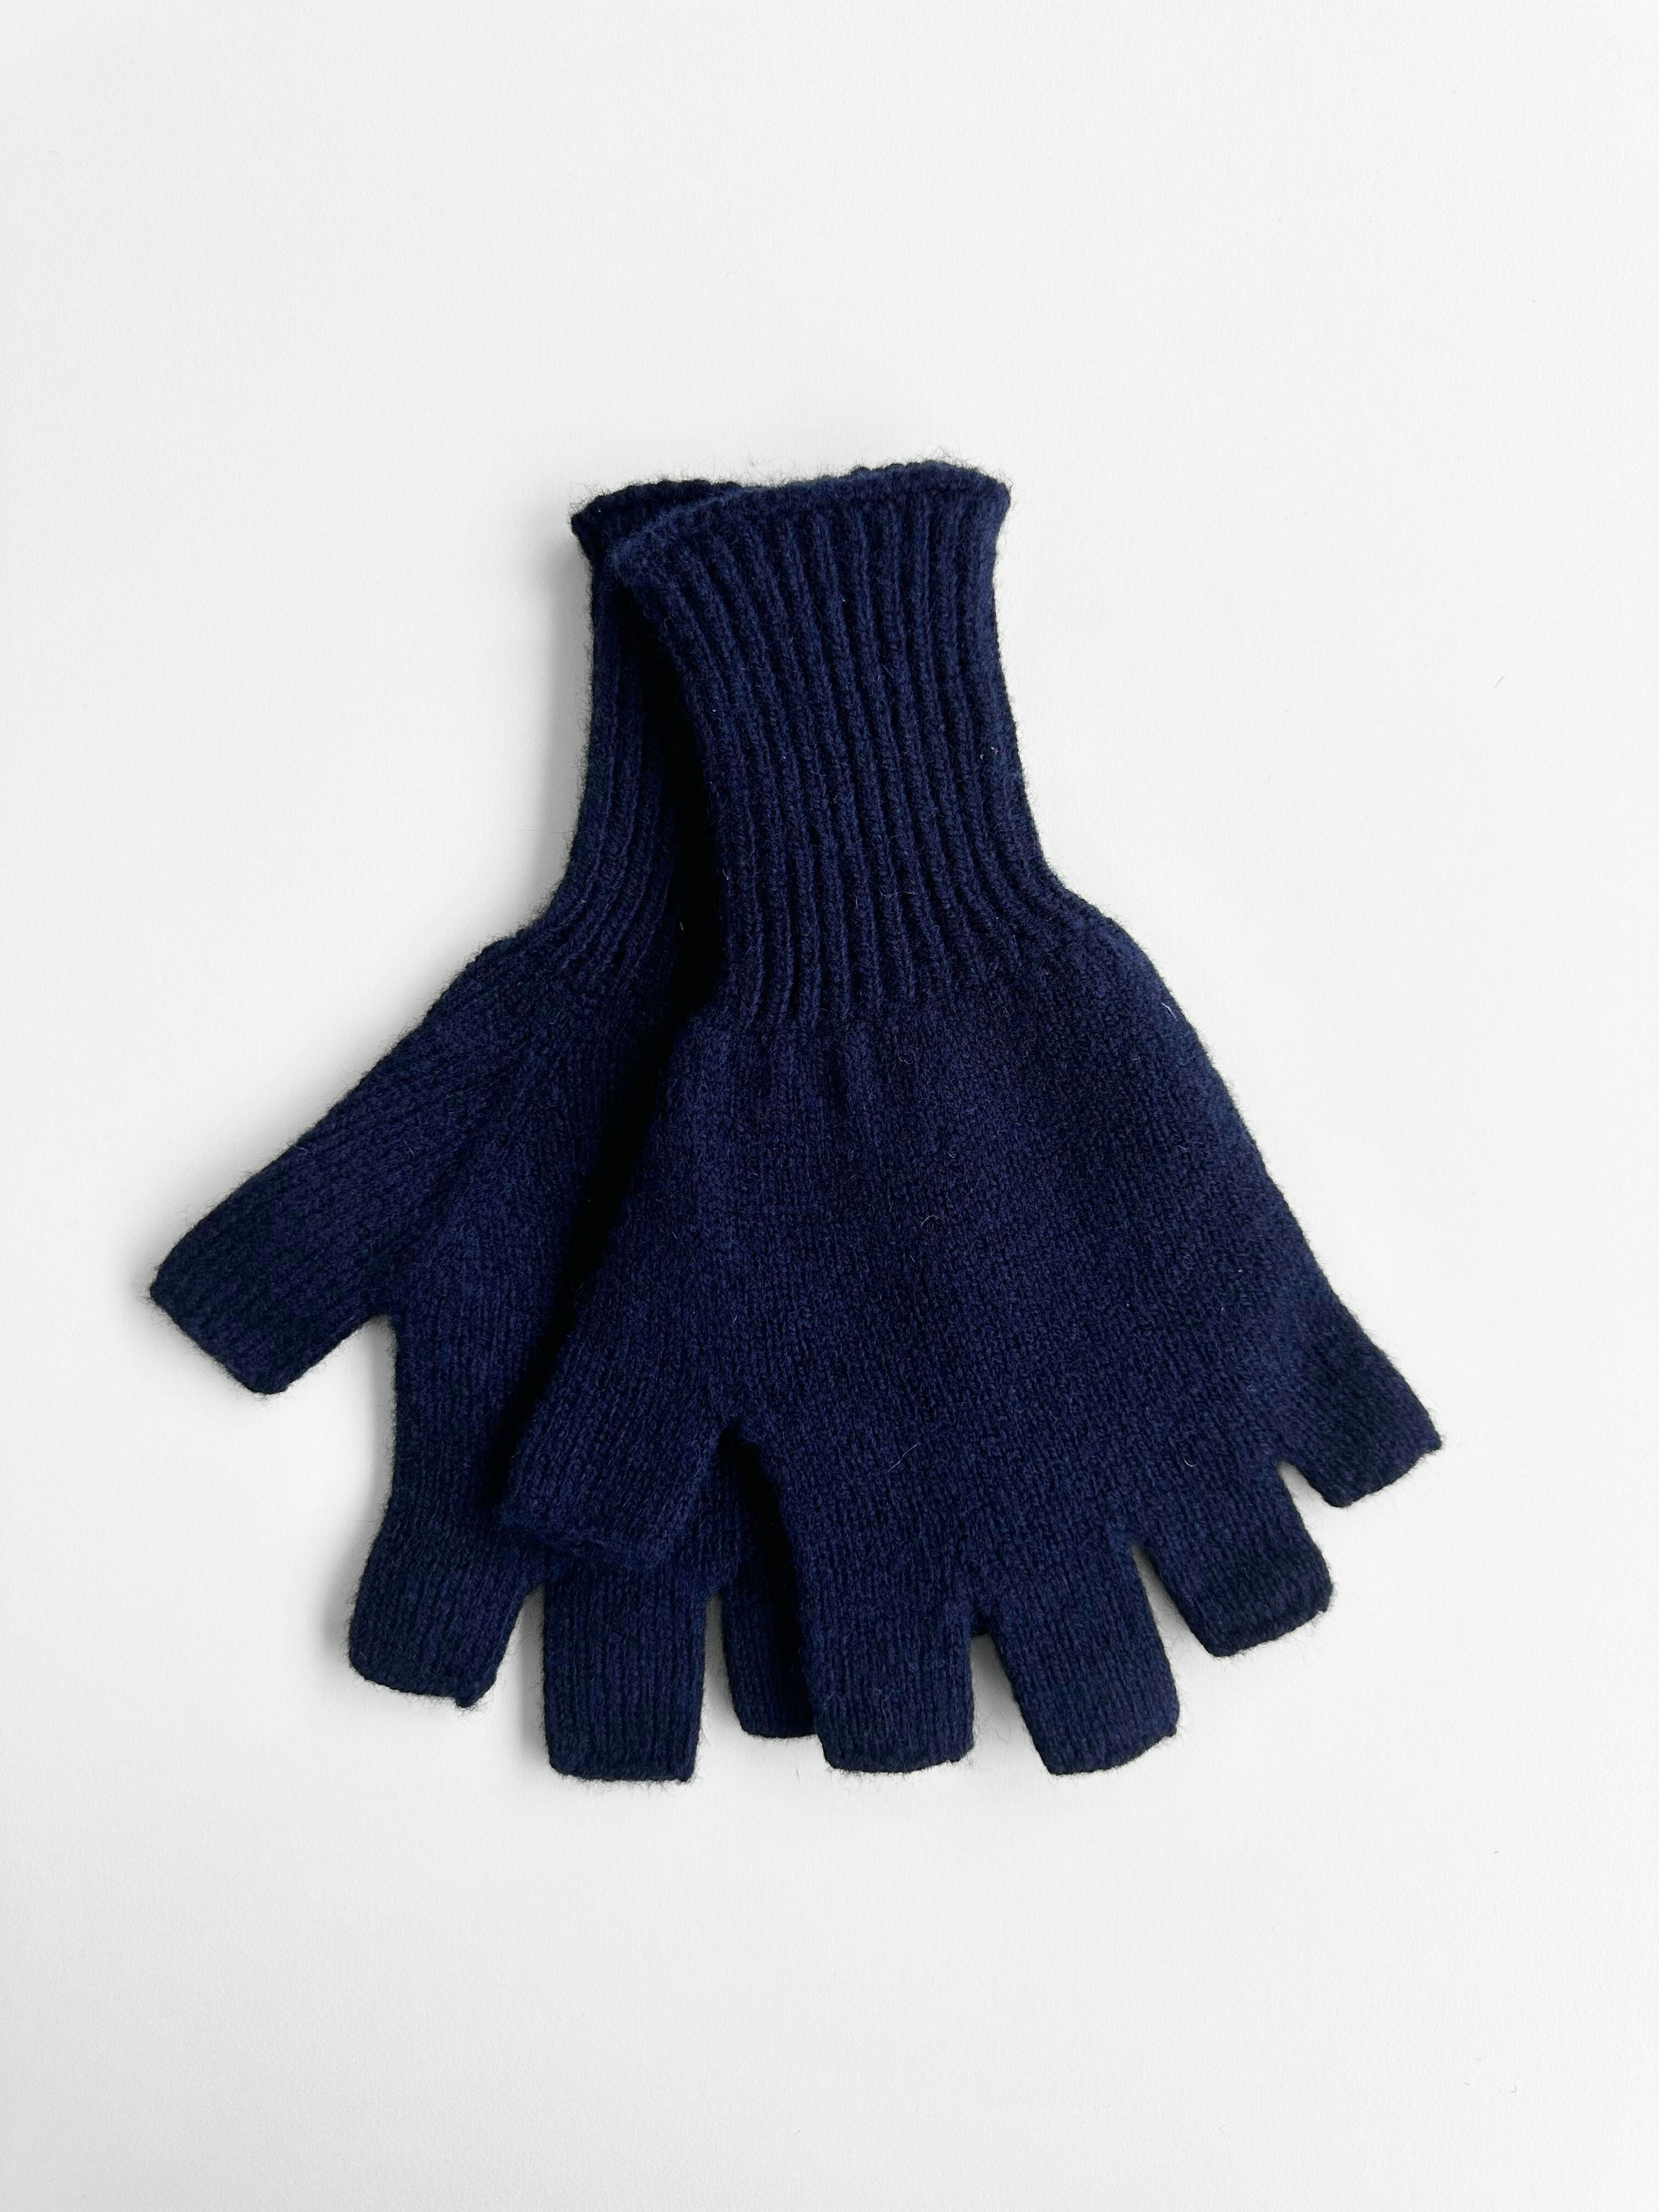 Fingerless Gloves Men's Hand Knit Navy Blue Merino Wool & 